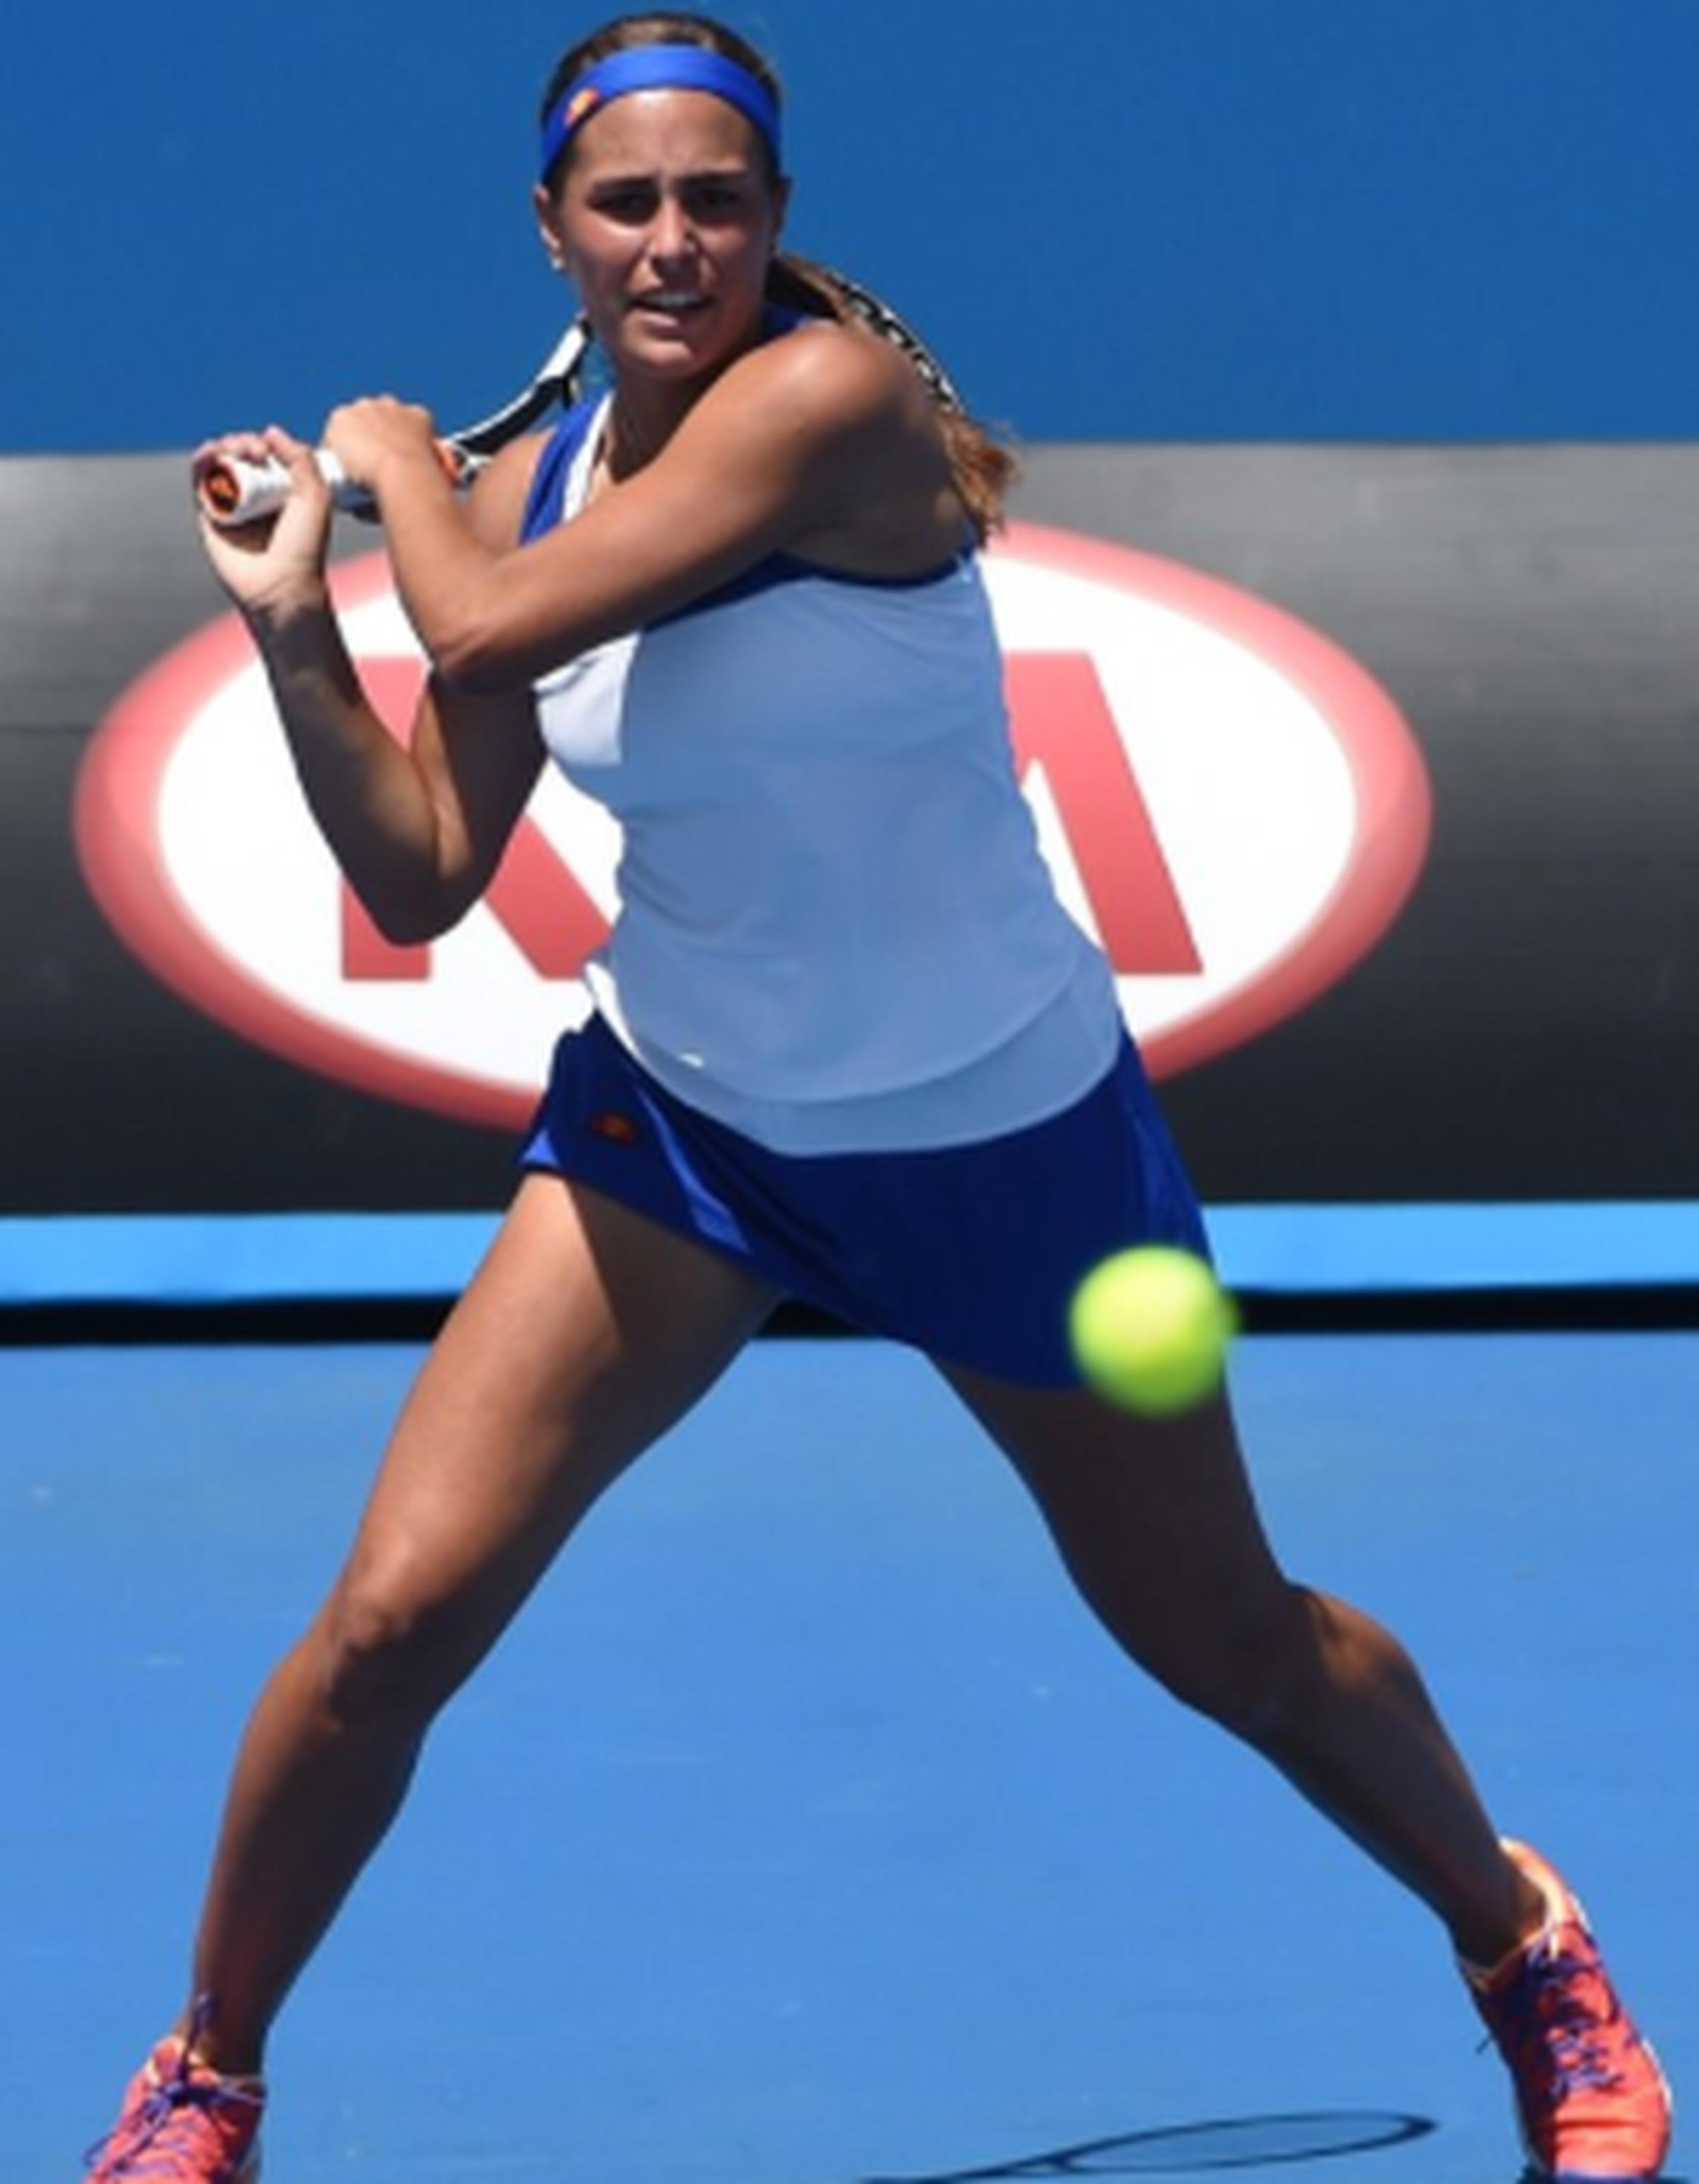 Mónica Puig comenzó con fuerza al ganar el primer “game” del partido, pero desde ese momento, Carla Suárez Navarro dominó el encuentro. (Archivo)